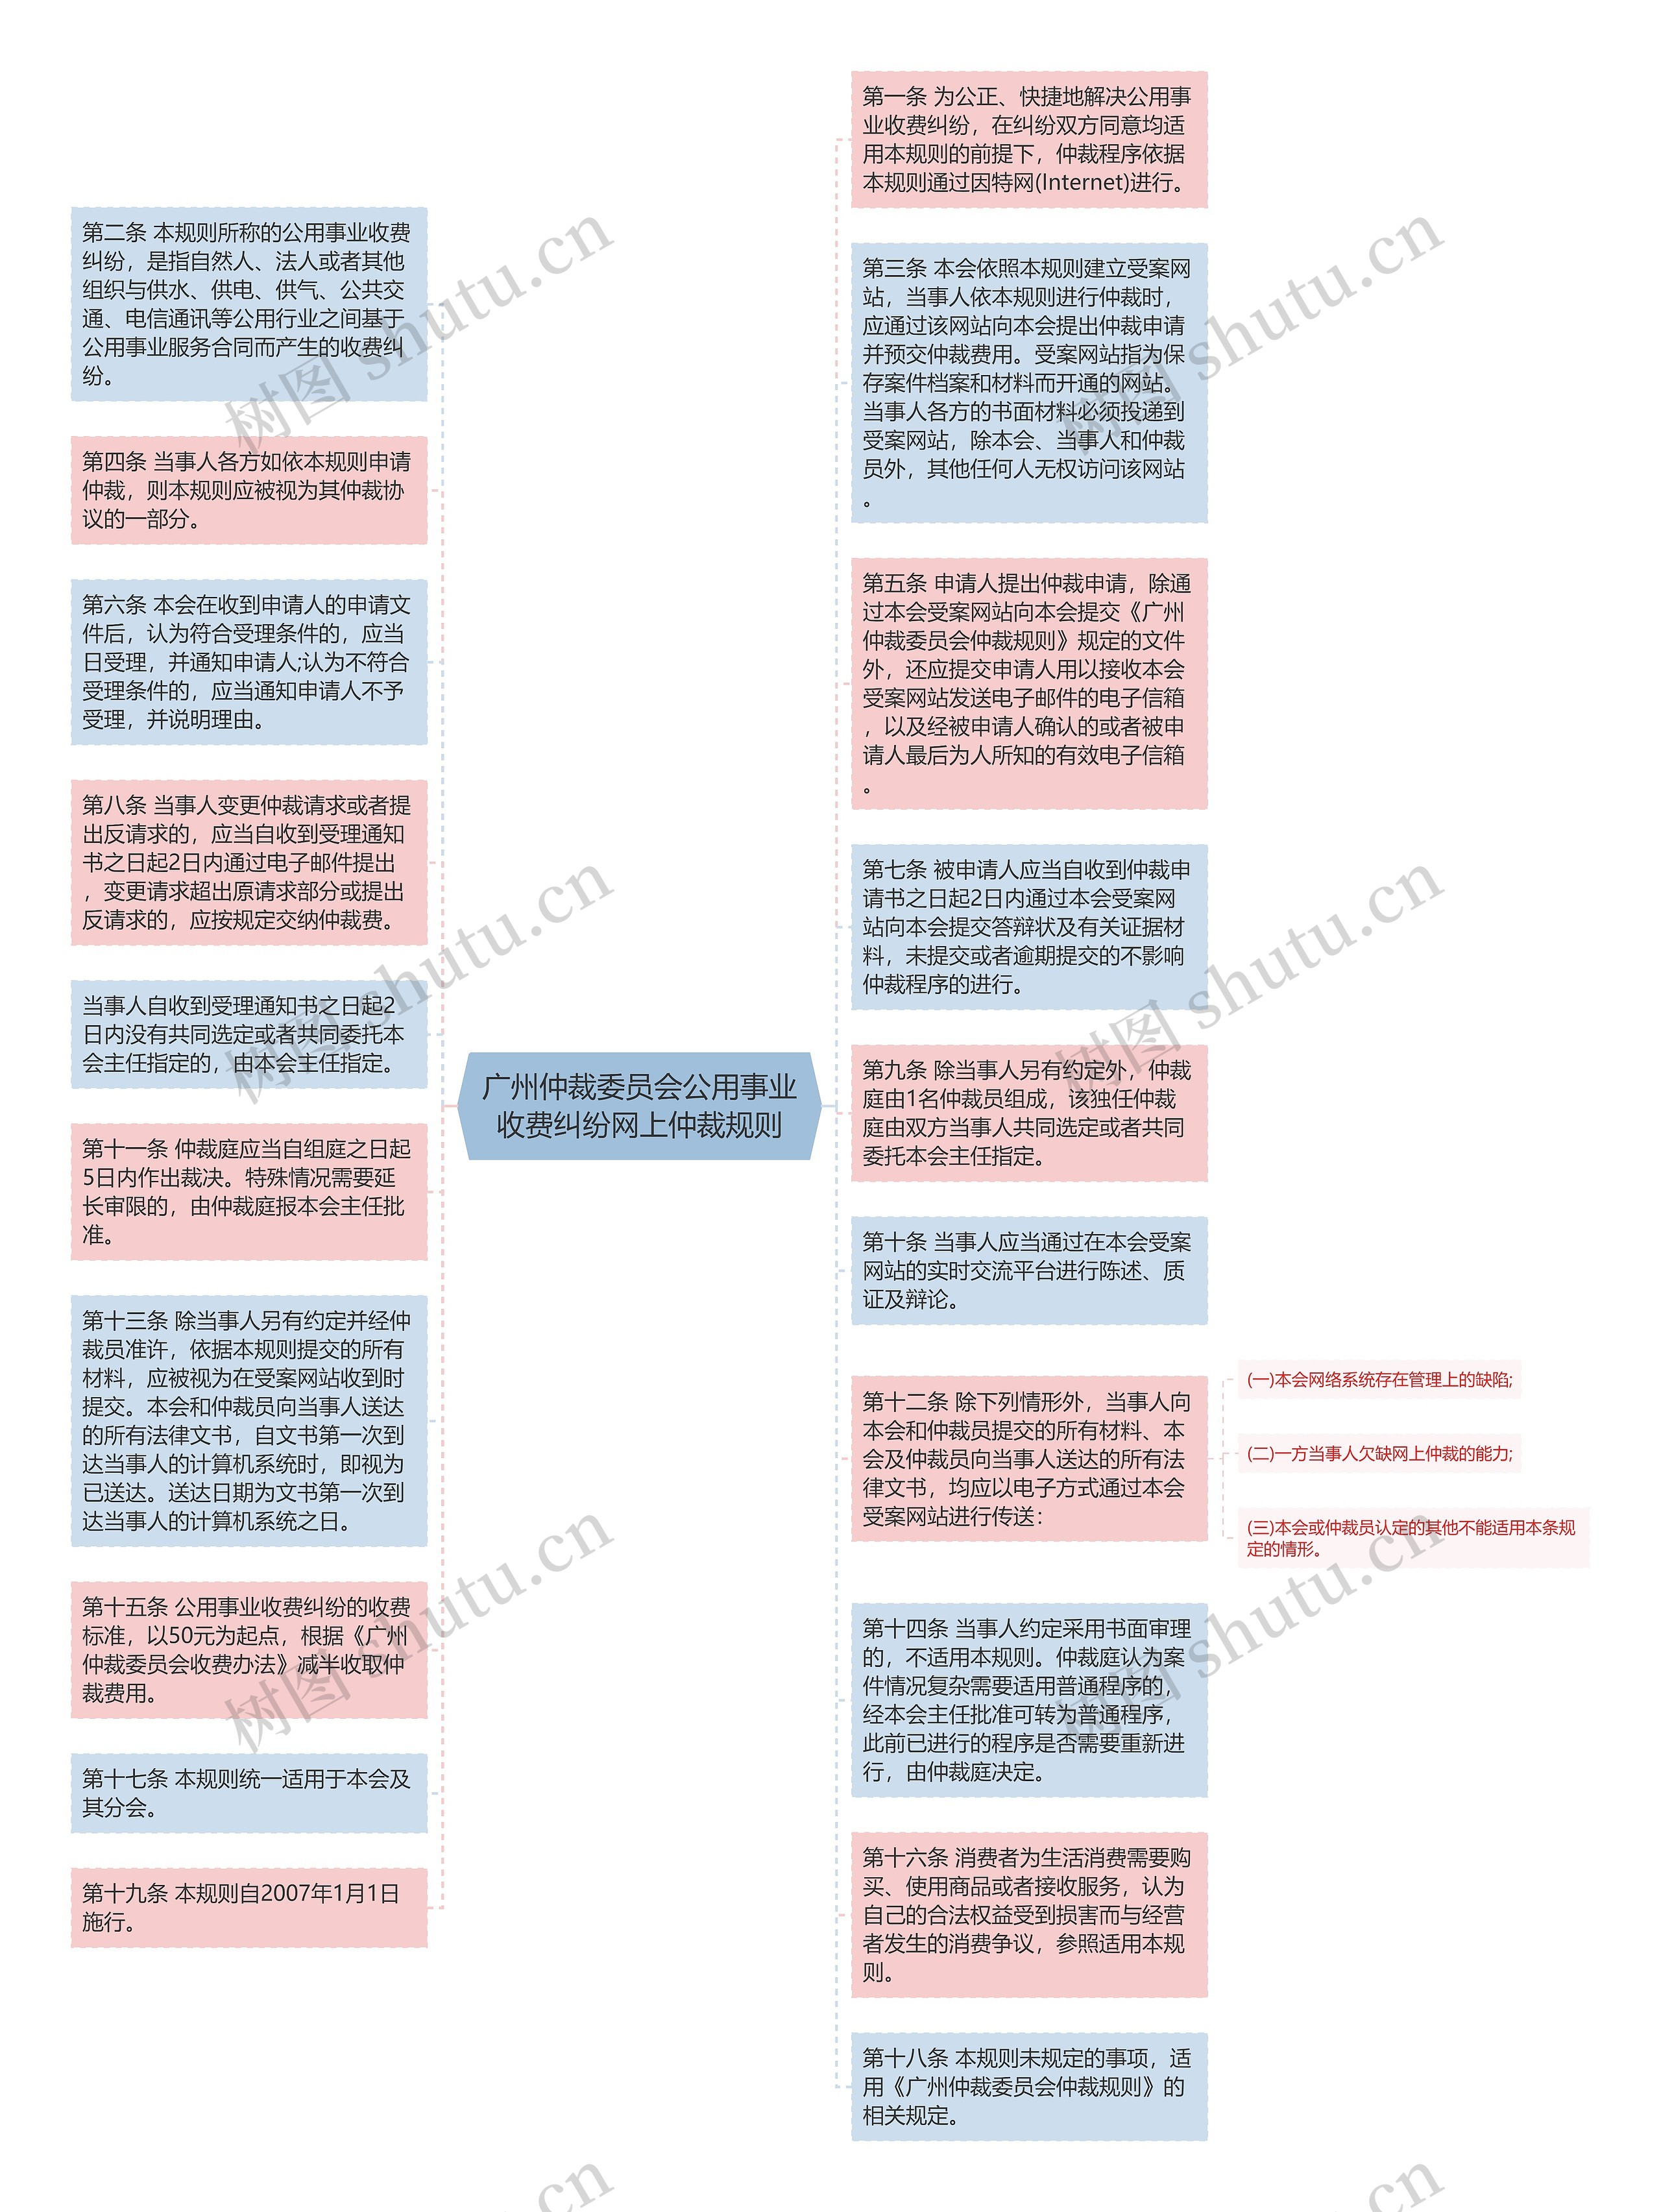 广州仲裁委员会公用事业收费纠纷网上仲裁规则思维导图